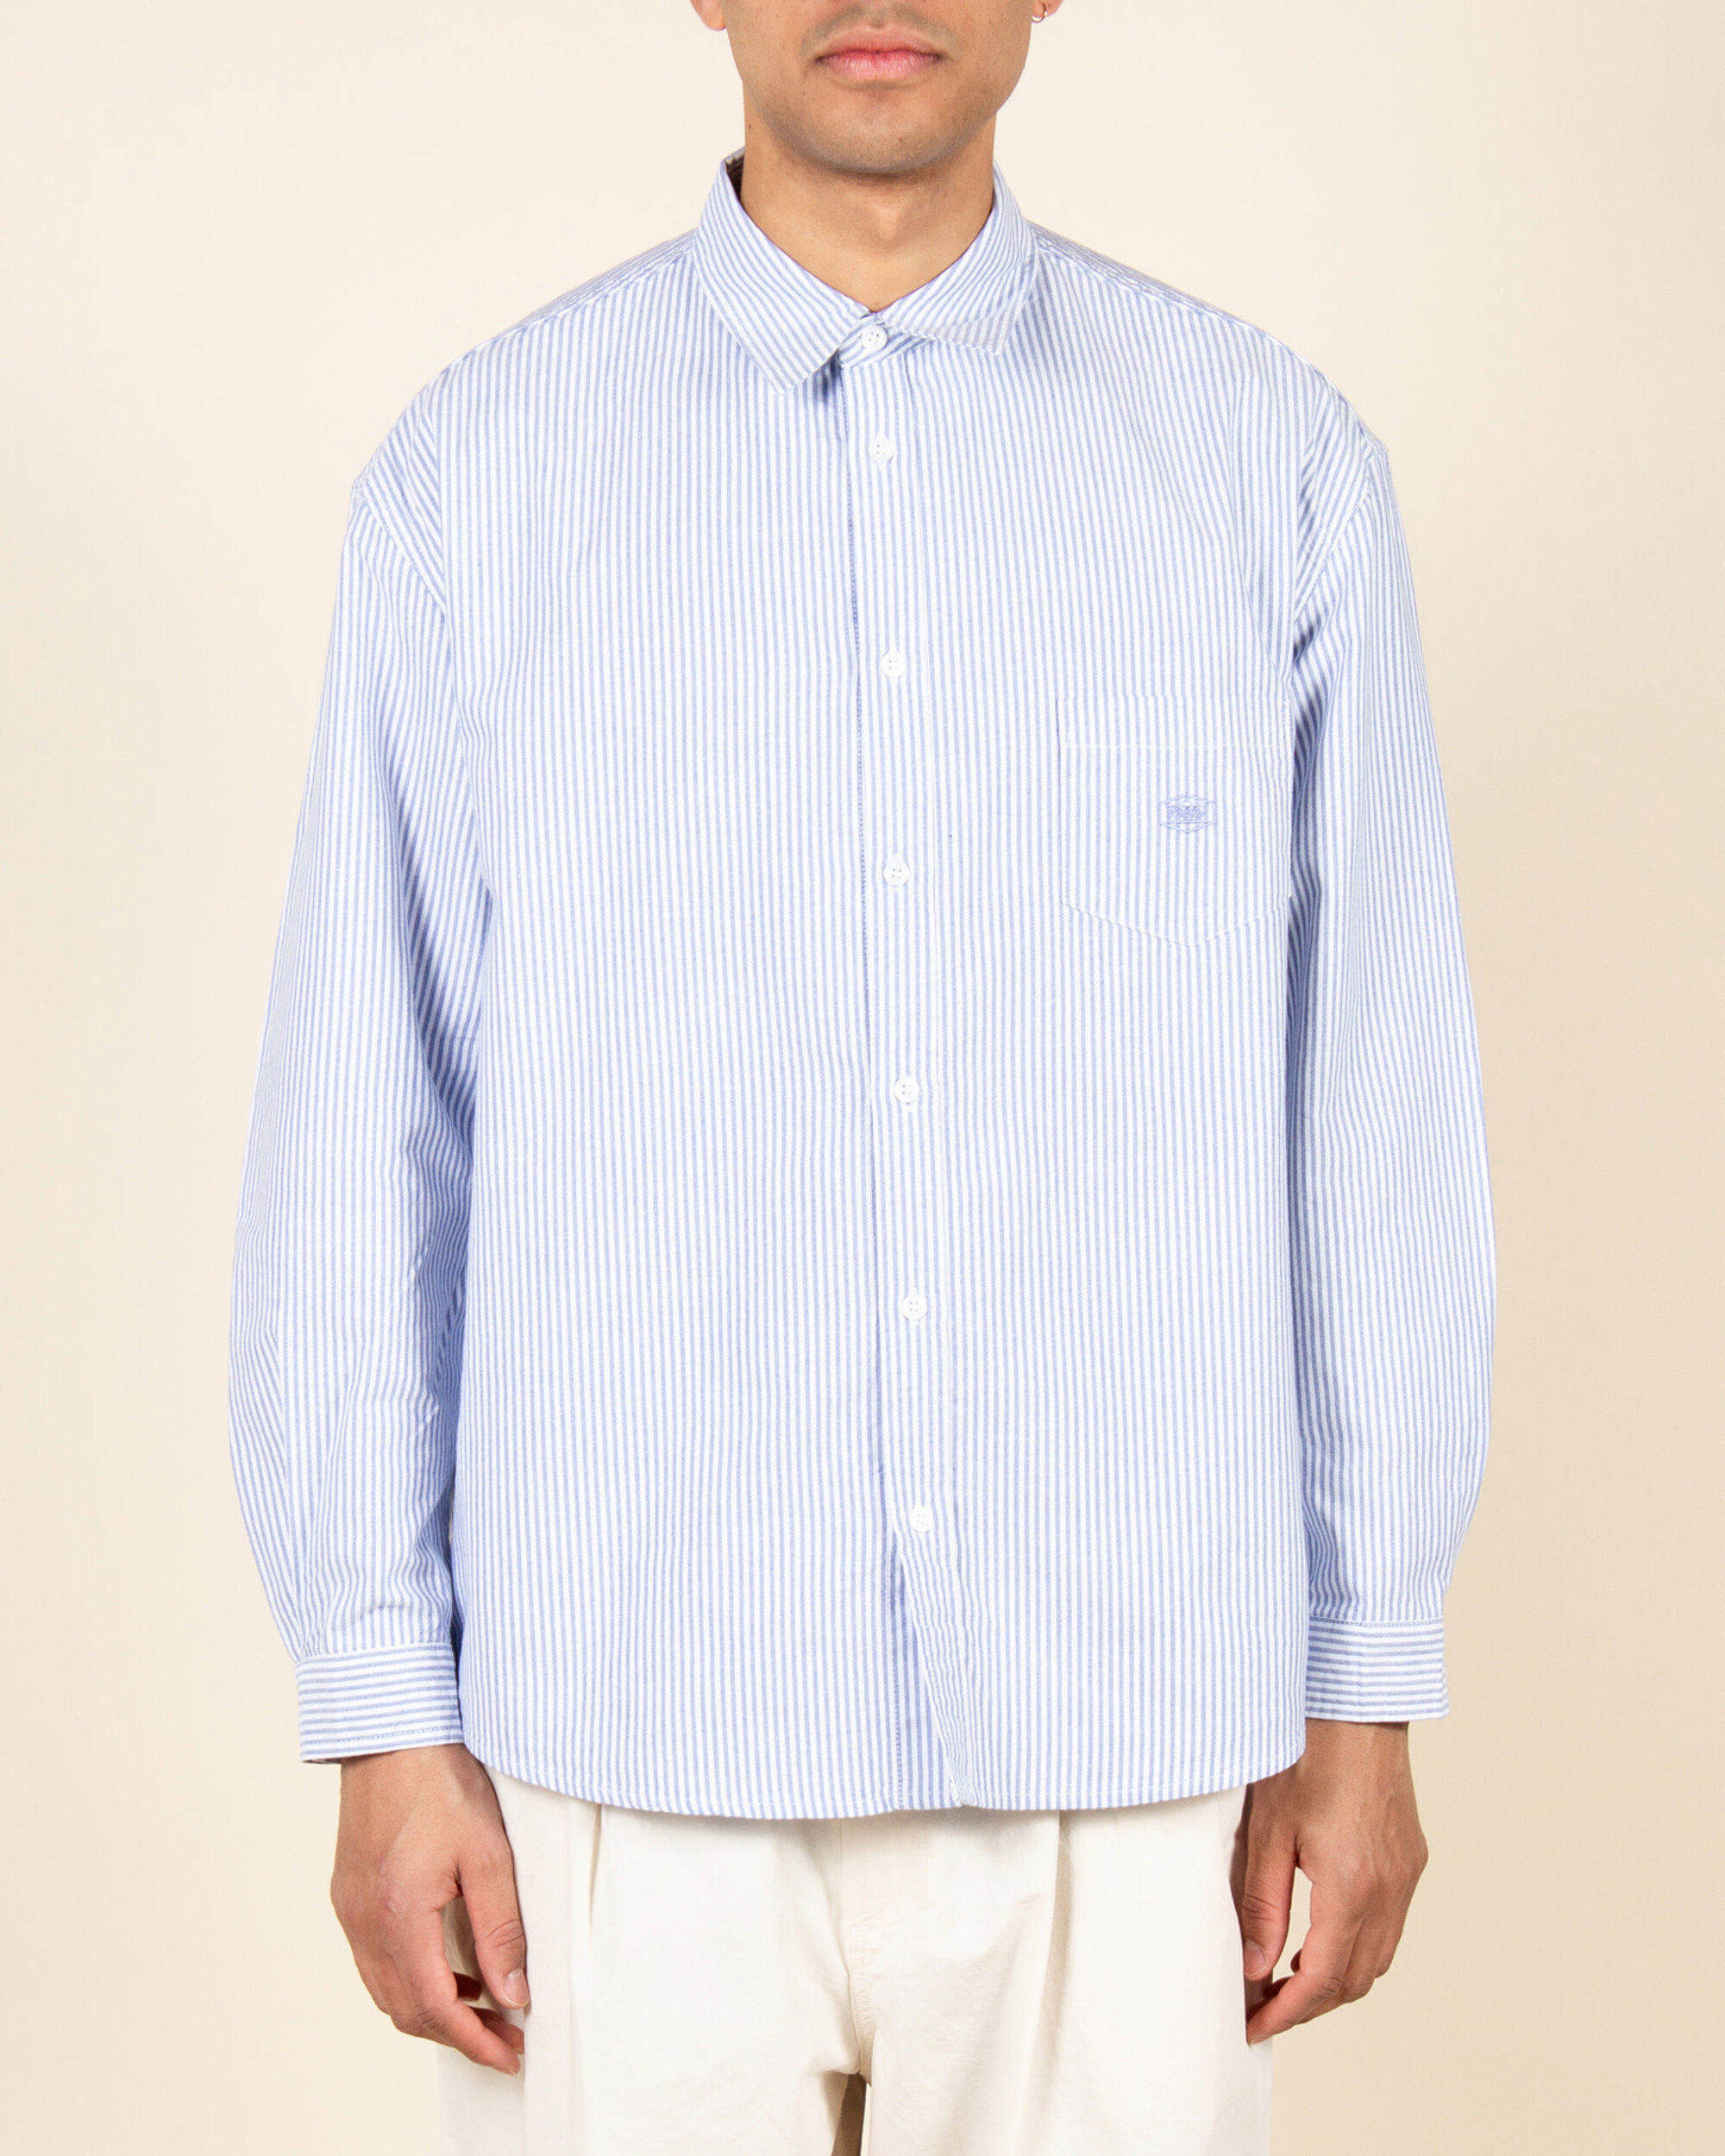 Kappy Oxford Stripe Shirt - Blue